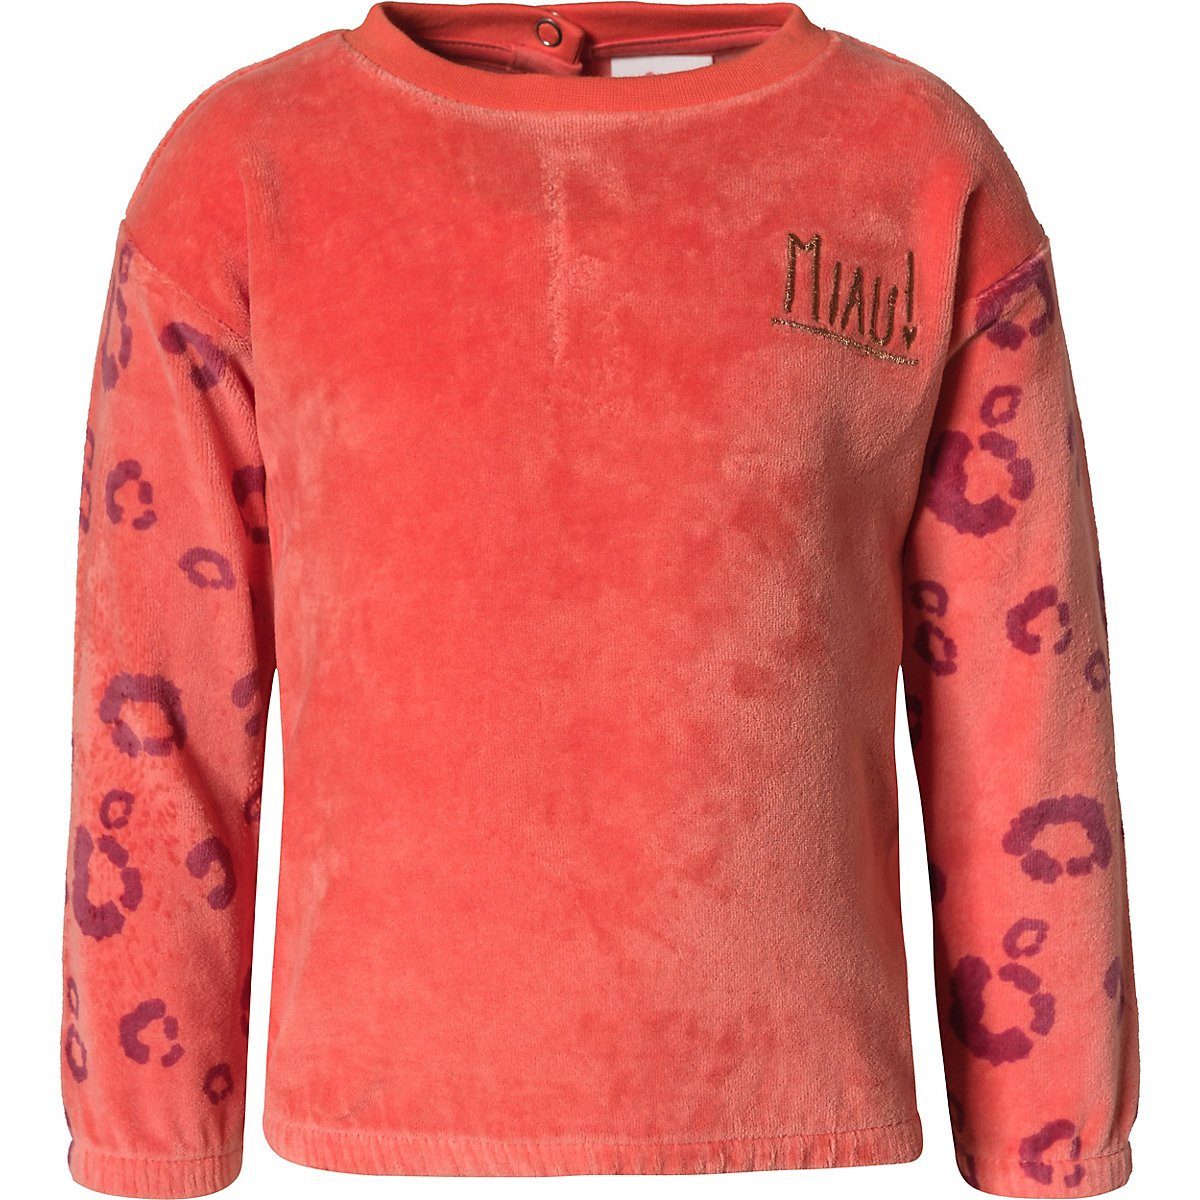 Kinder Sweater s.Oliver Sweatshirt Baby Sweatshirt für Mädchen